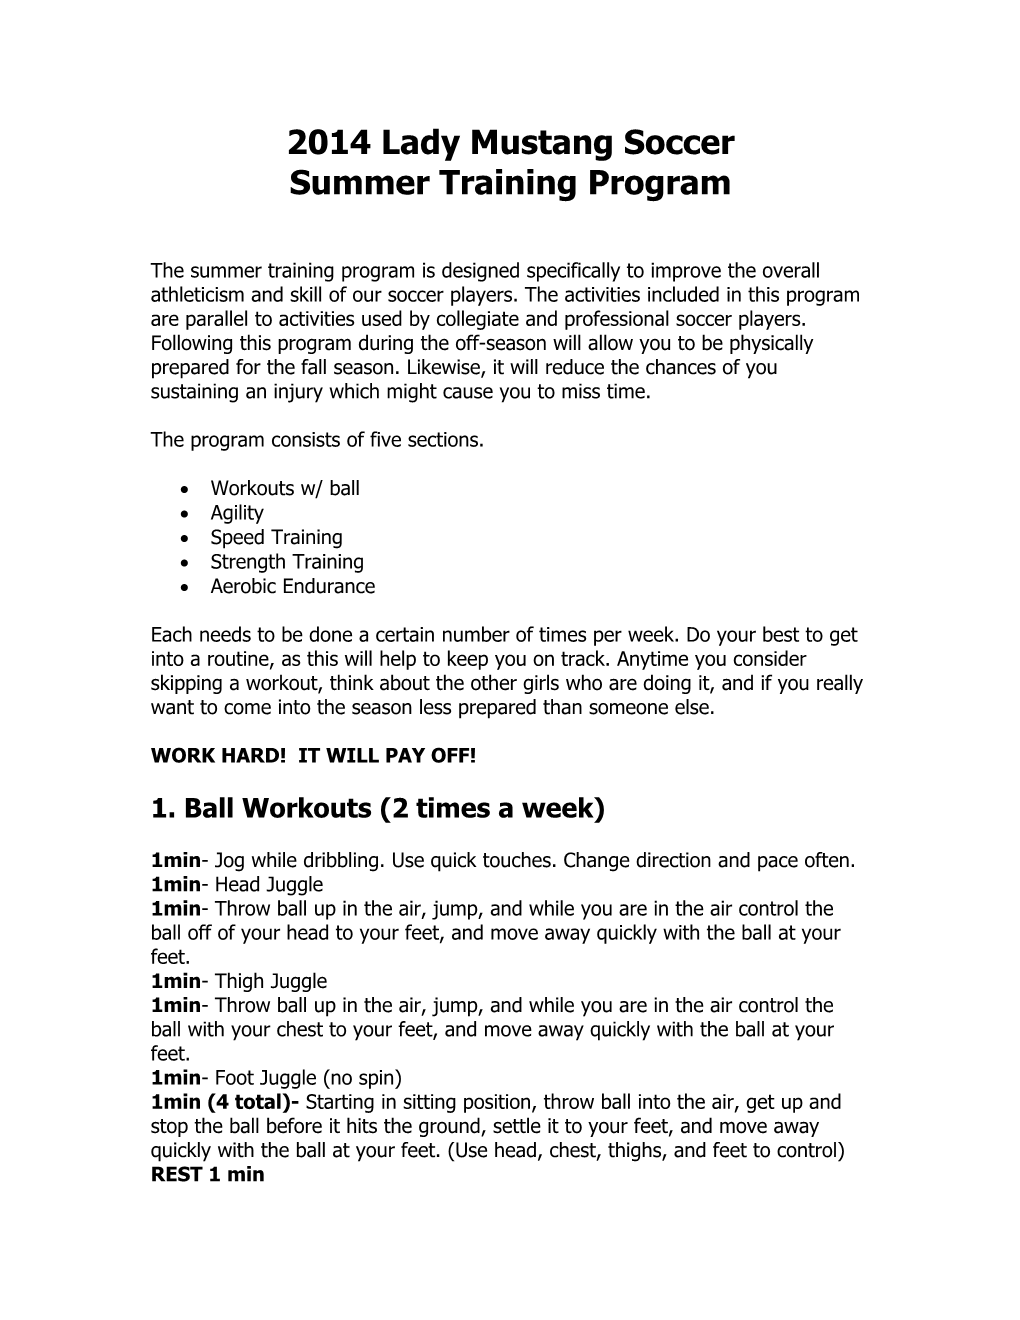 2007 Mustang Summer Training Program